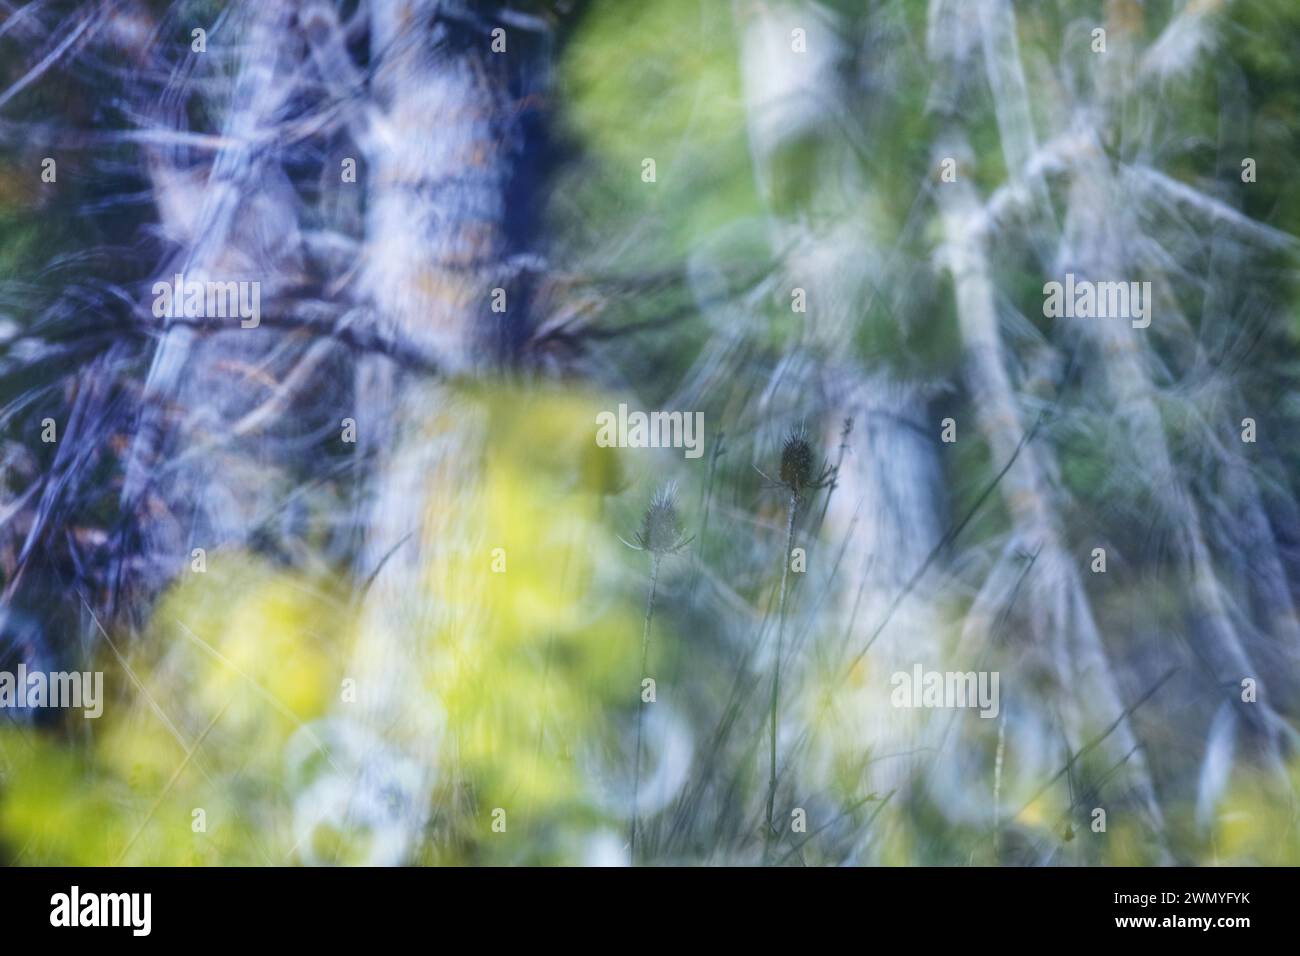 Vue abstraite d'une forêt de peupliers blancs avec des branches floues et des feuilles jaunes créant un effet pictural Banque D'Images